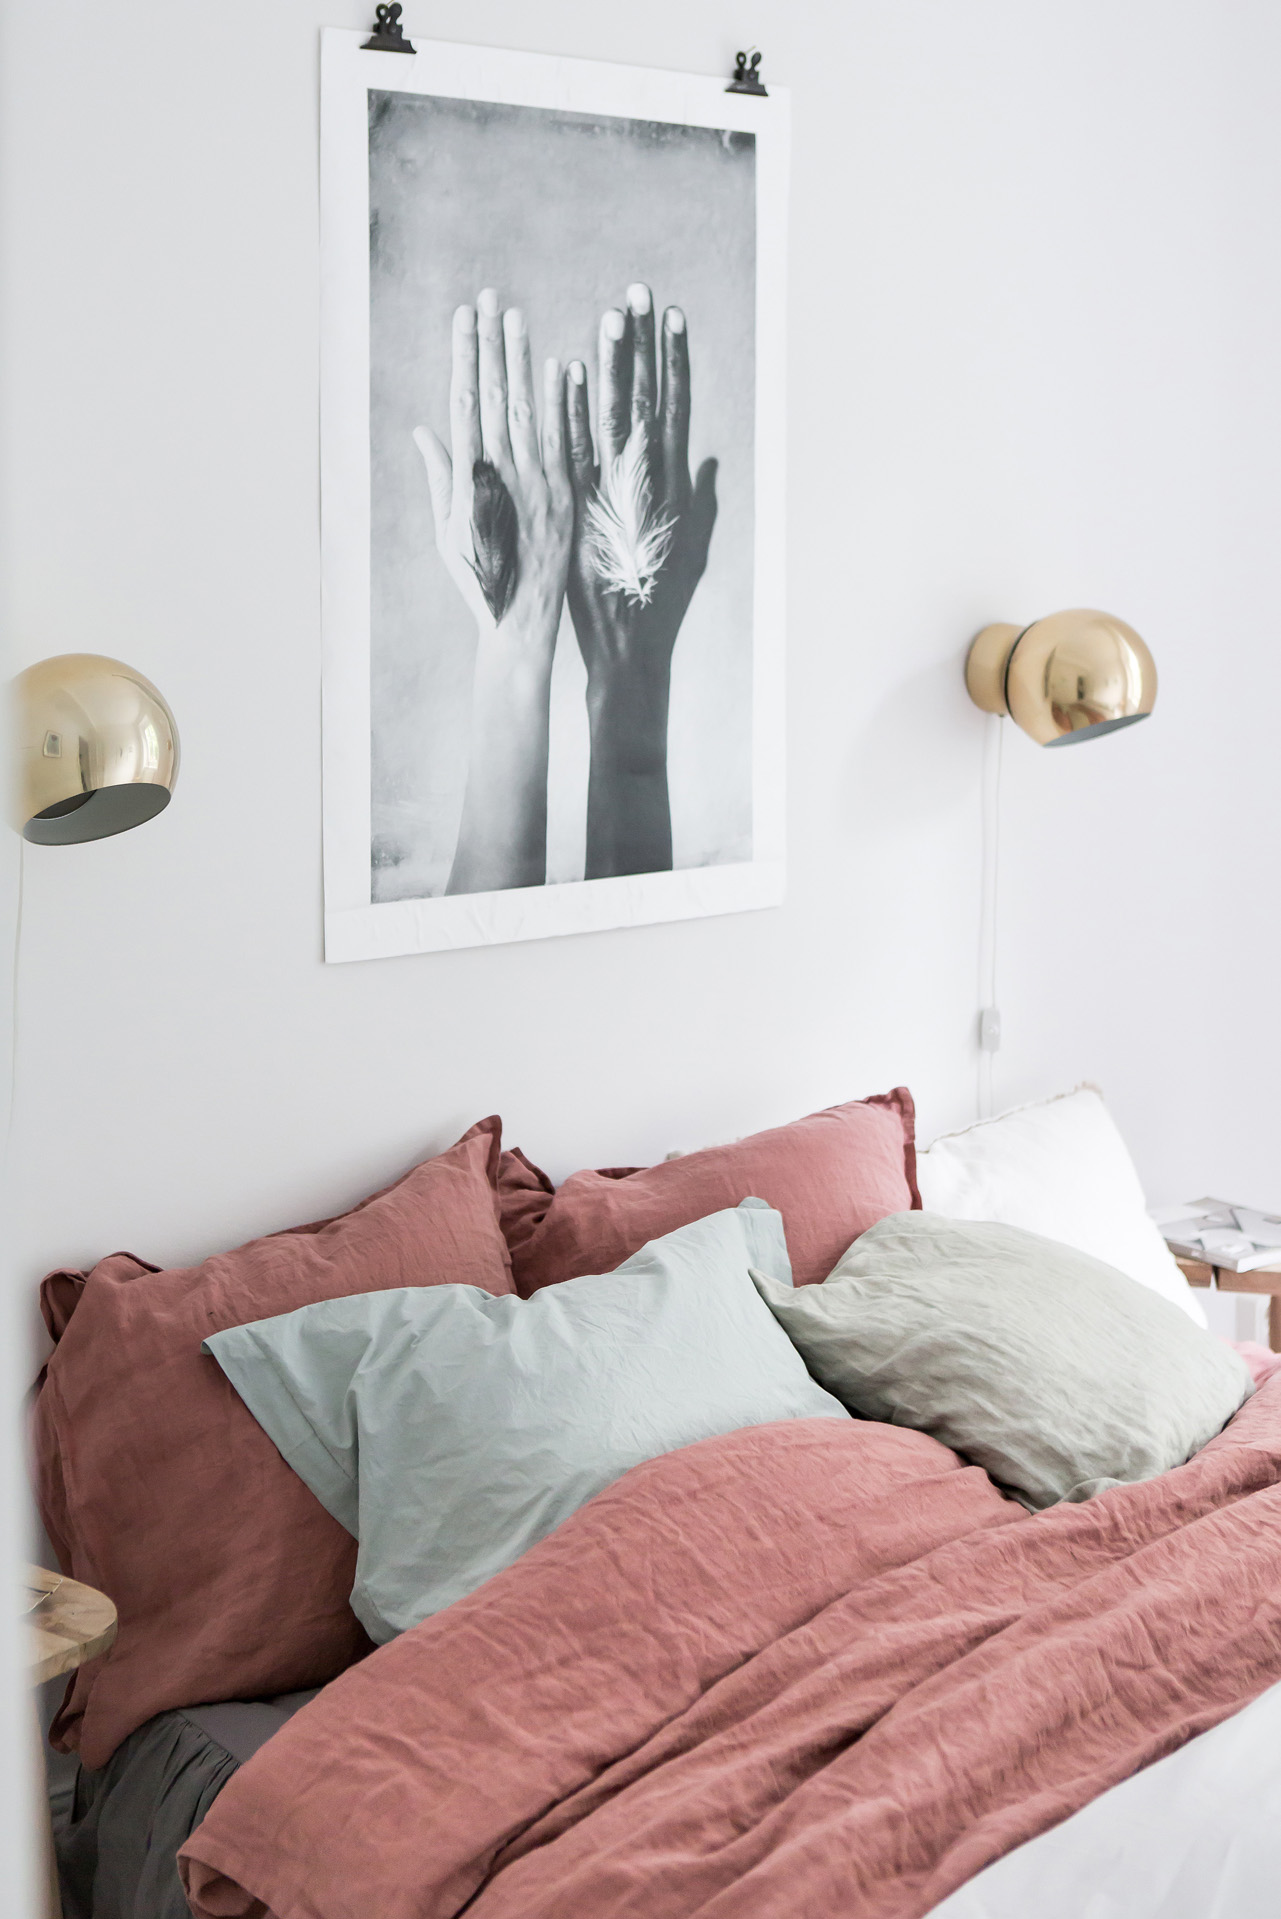 Witte slaapkamer met kleurrijk bedlinnen